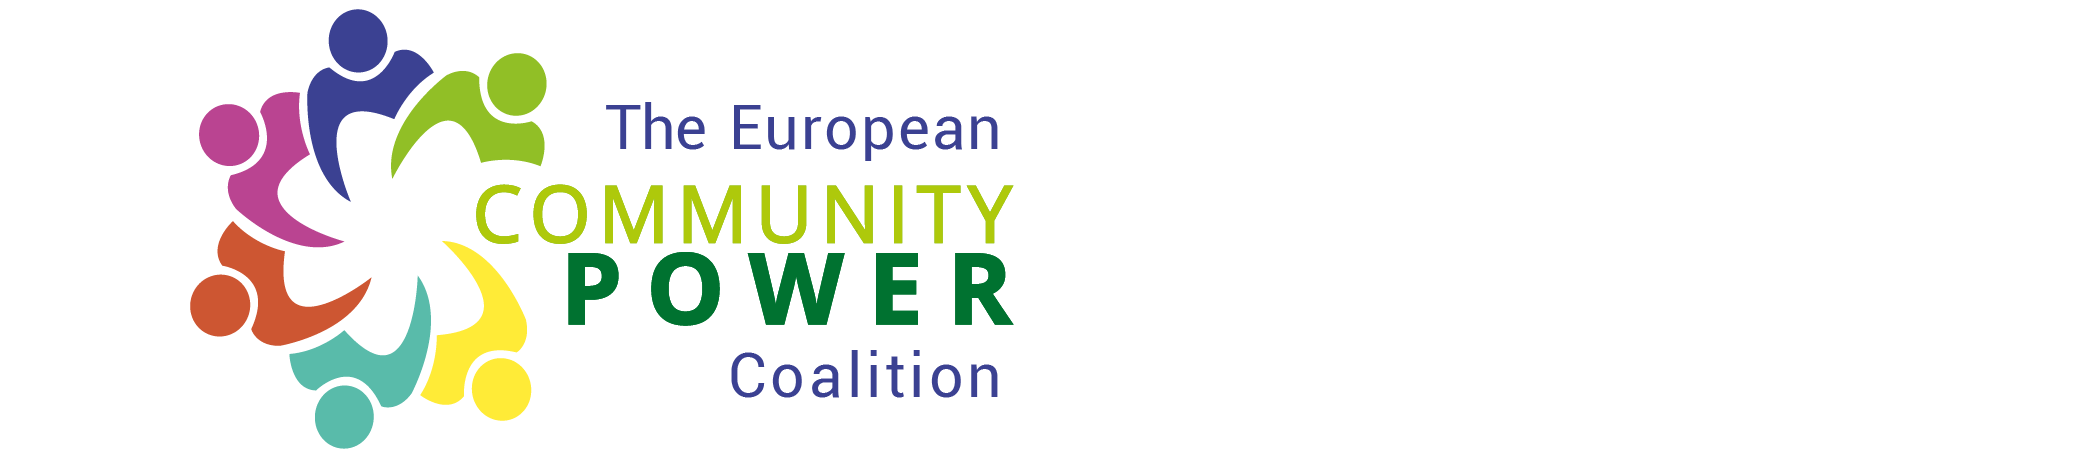 Co Power eu header new letter